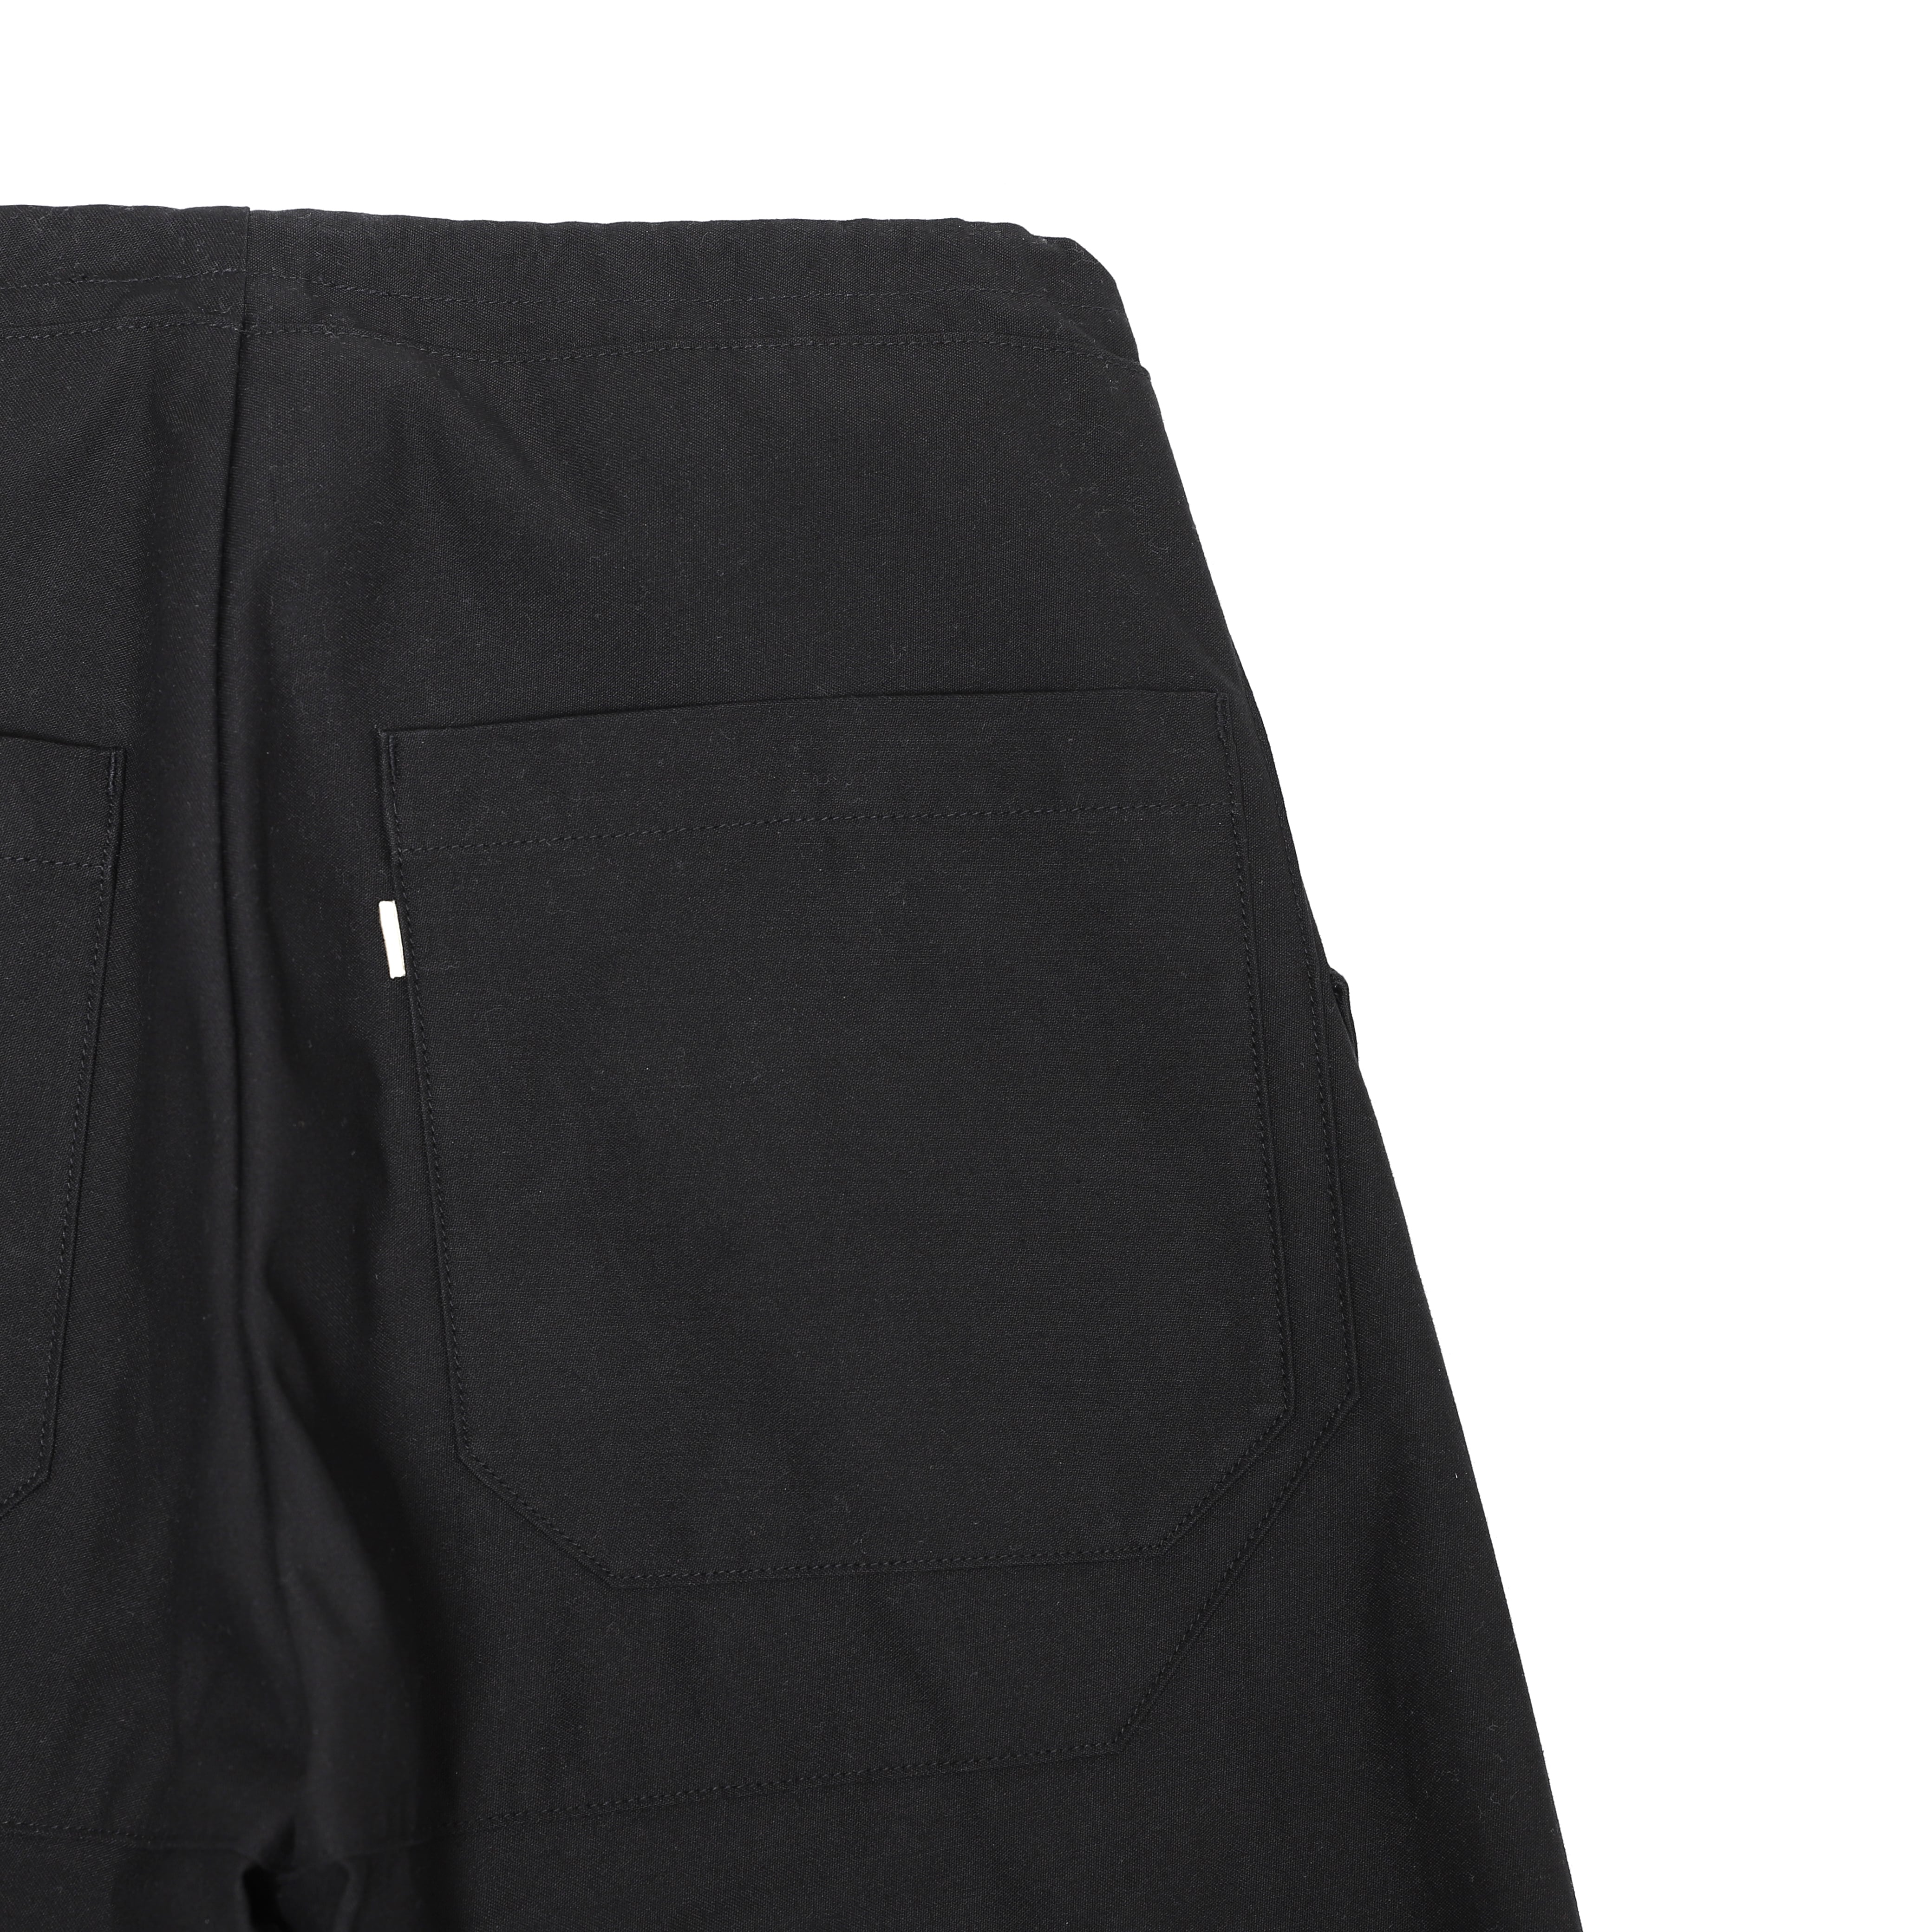 Cordura Nylon Utility Military Pants